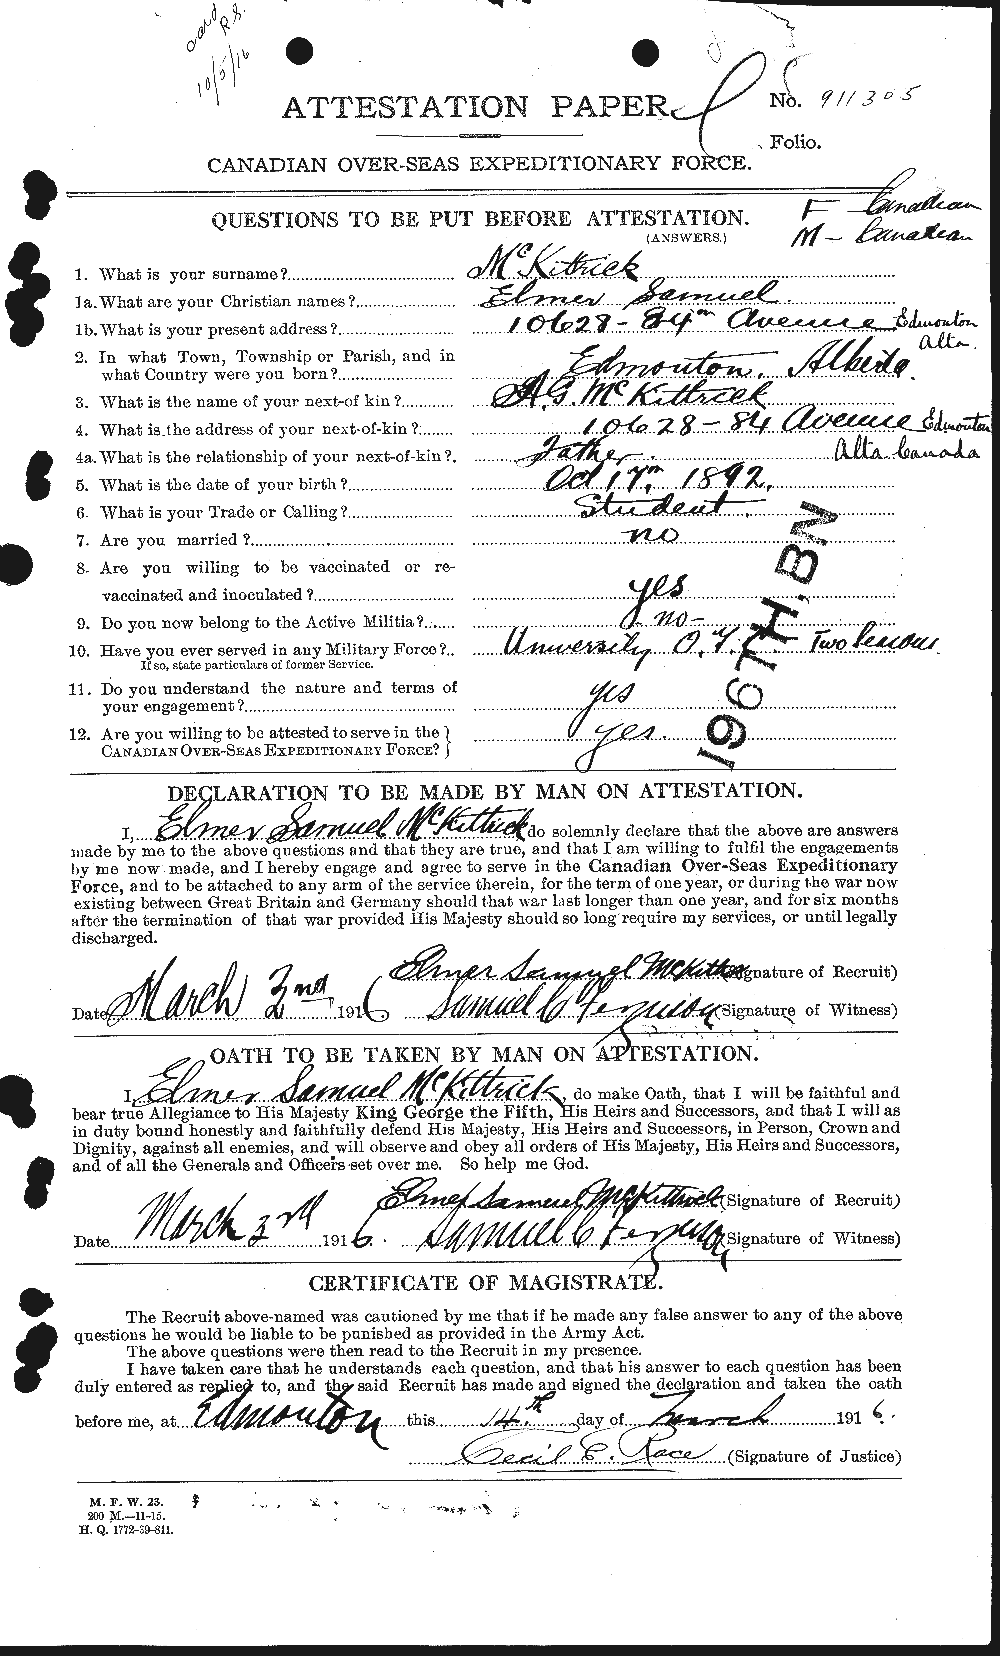 Dossiers du Personnel de la Première Guerre mondiale - CEC 530669a